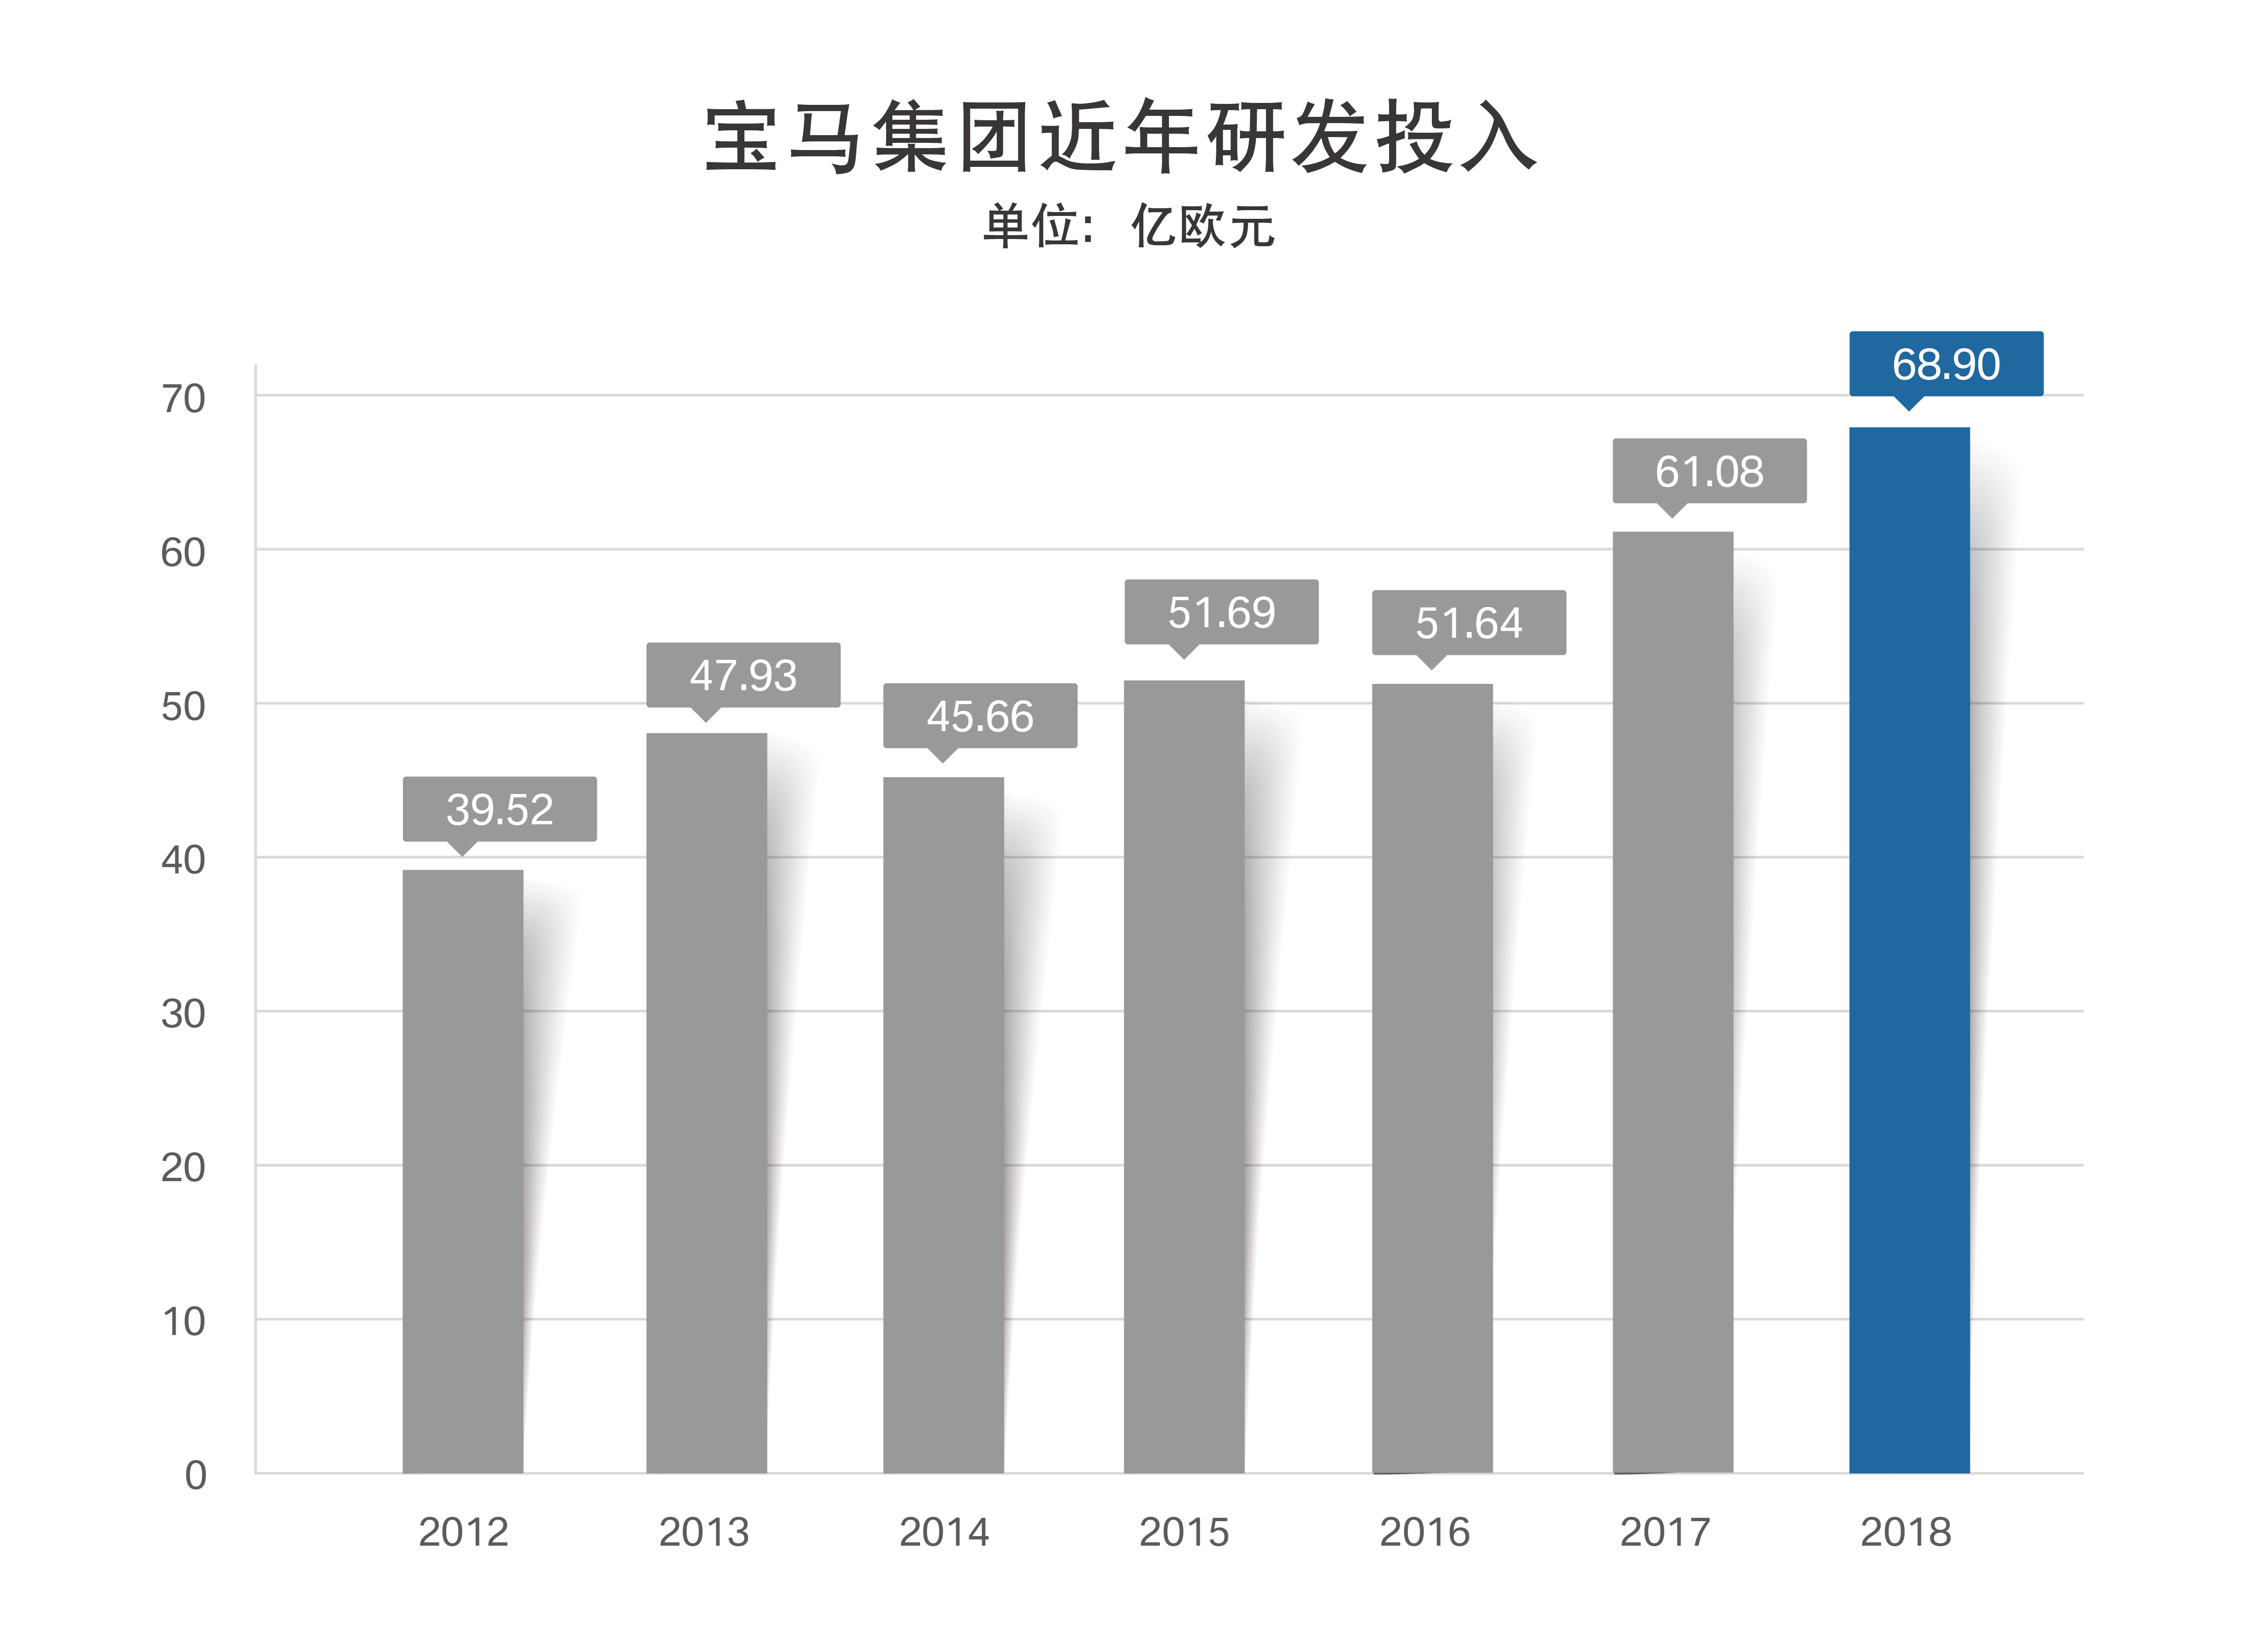 宝马集团公布2018财务业绩 税前利润近百亿